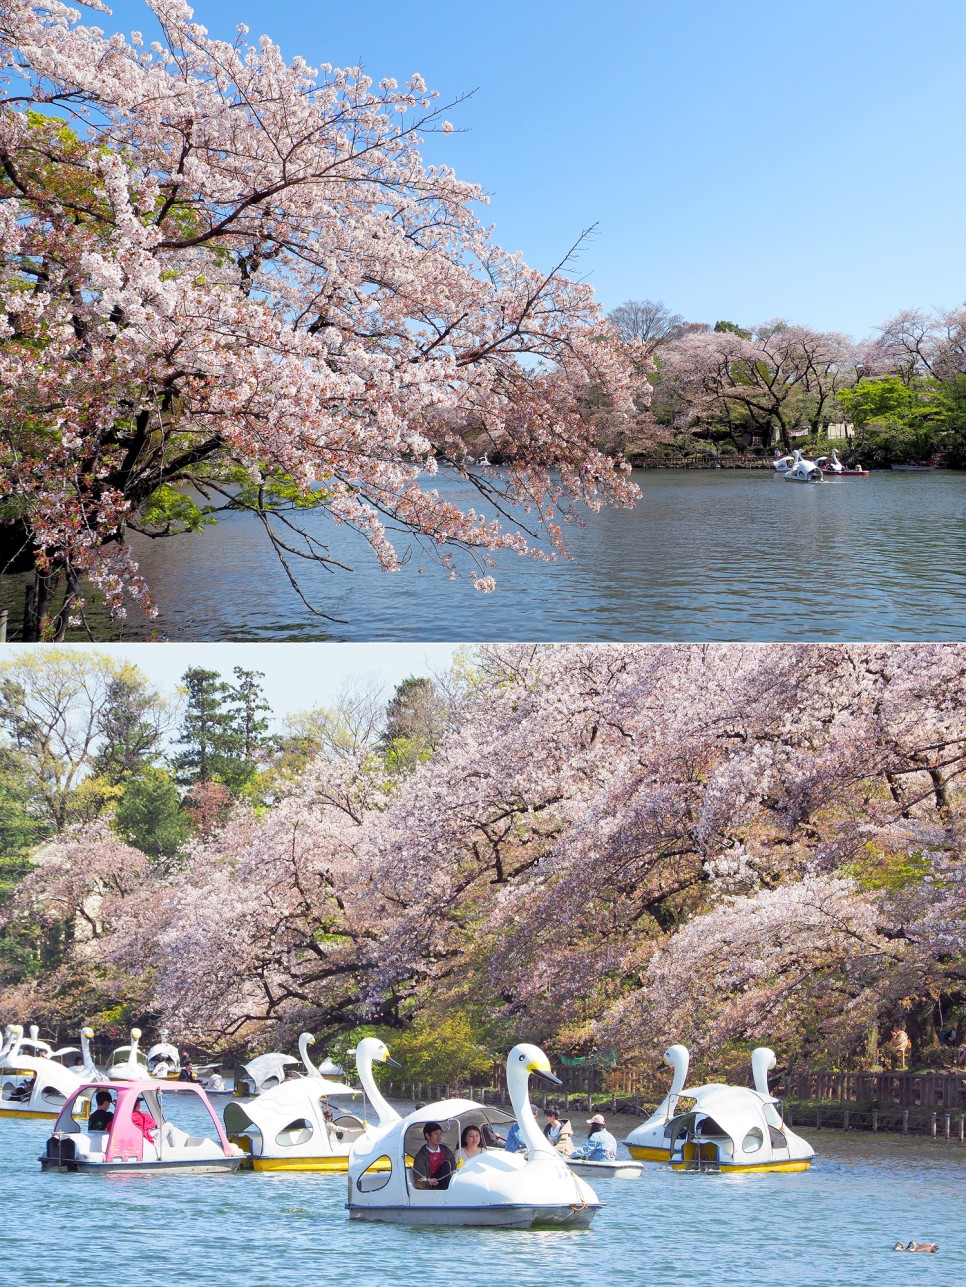 일본 도쿄 여행경비 벚꽃 명소 도쿄타워 지하철패스 구입